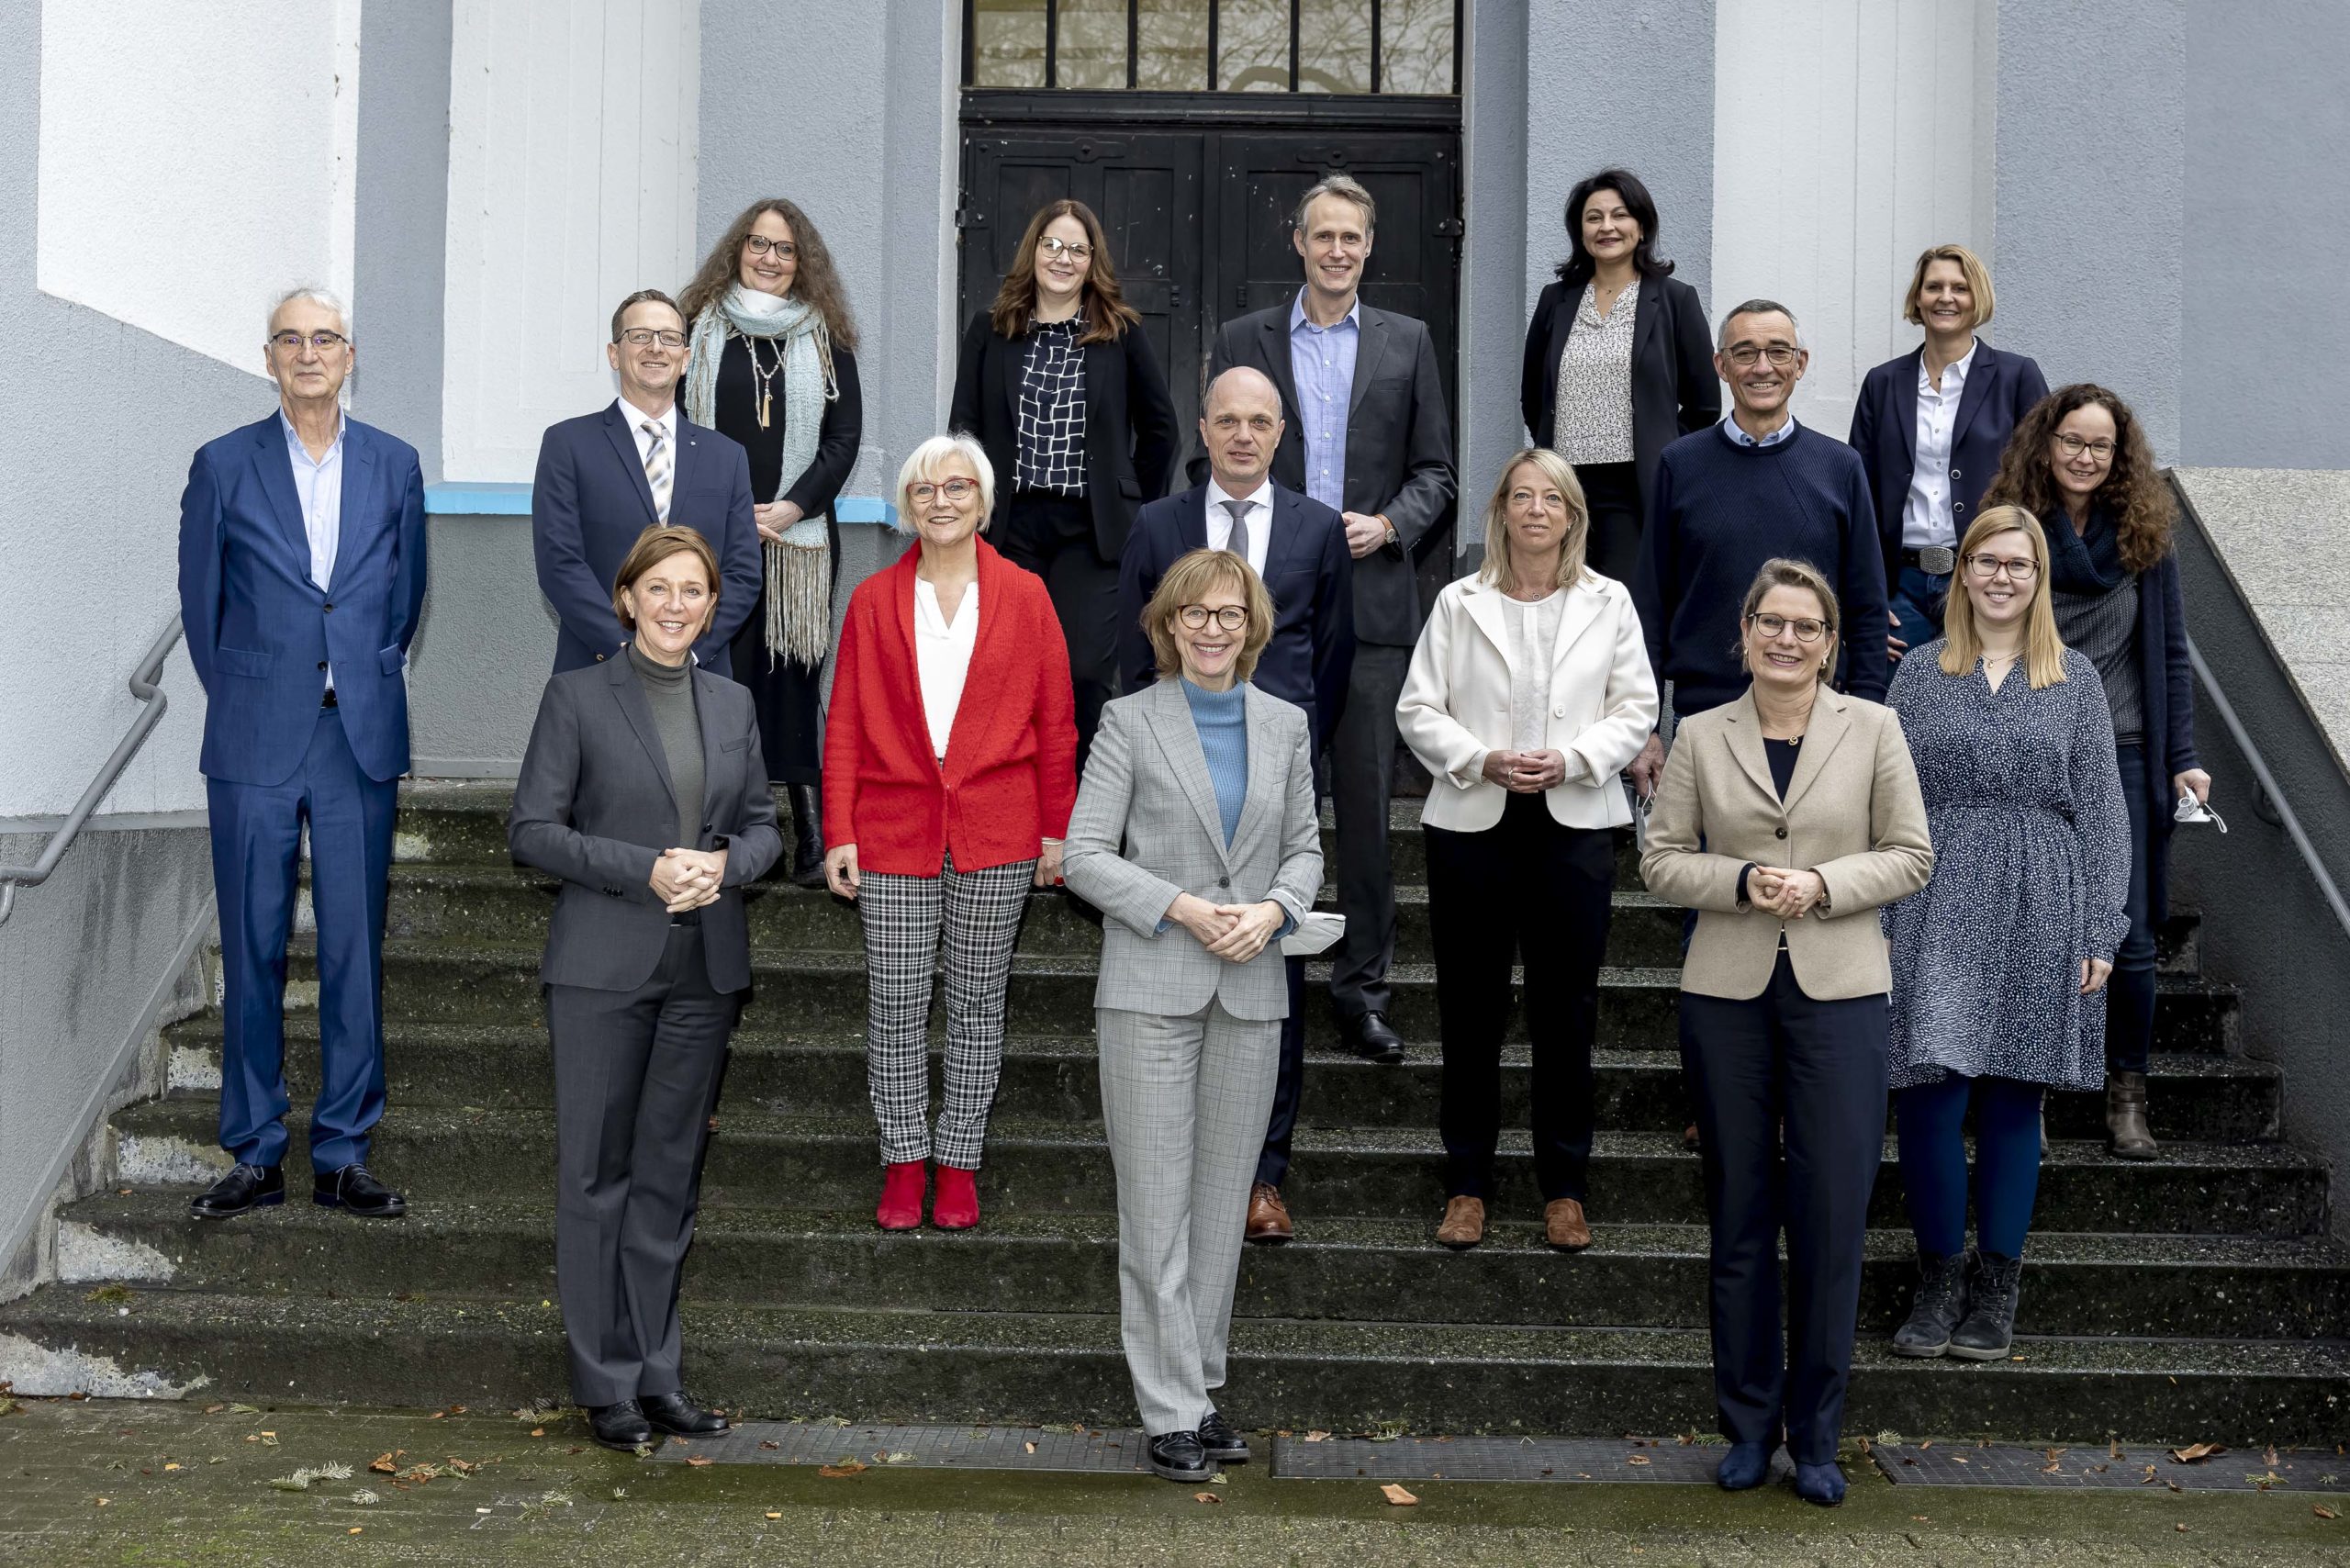 Die Bildungsministerinnen Dr. Stefanie Hubig (Rheinland-Pfalz) und Ministerin Yvonne Gebauer stehen mit 14 weiteren Personen auf einer Treppe in Gelsenkirchen